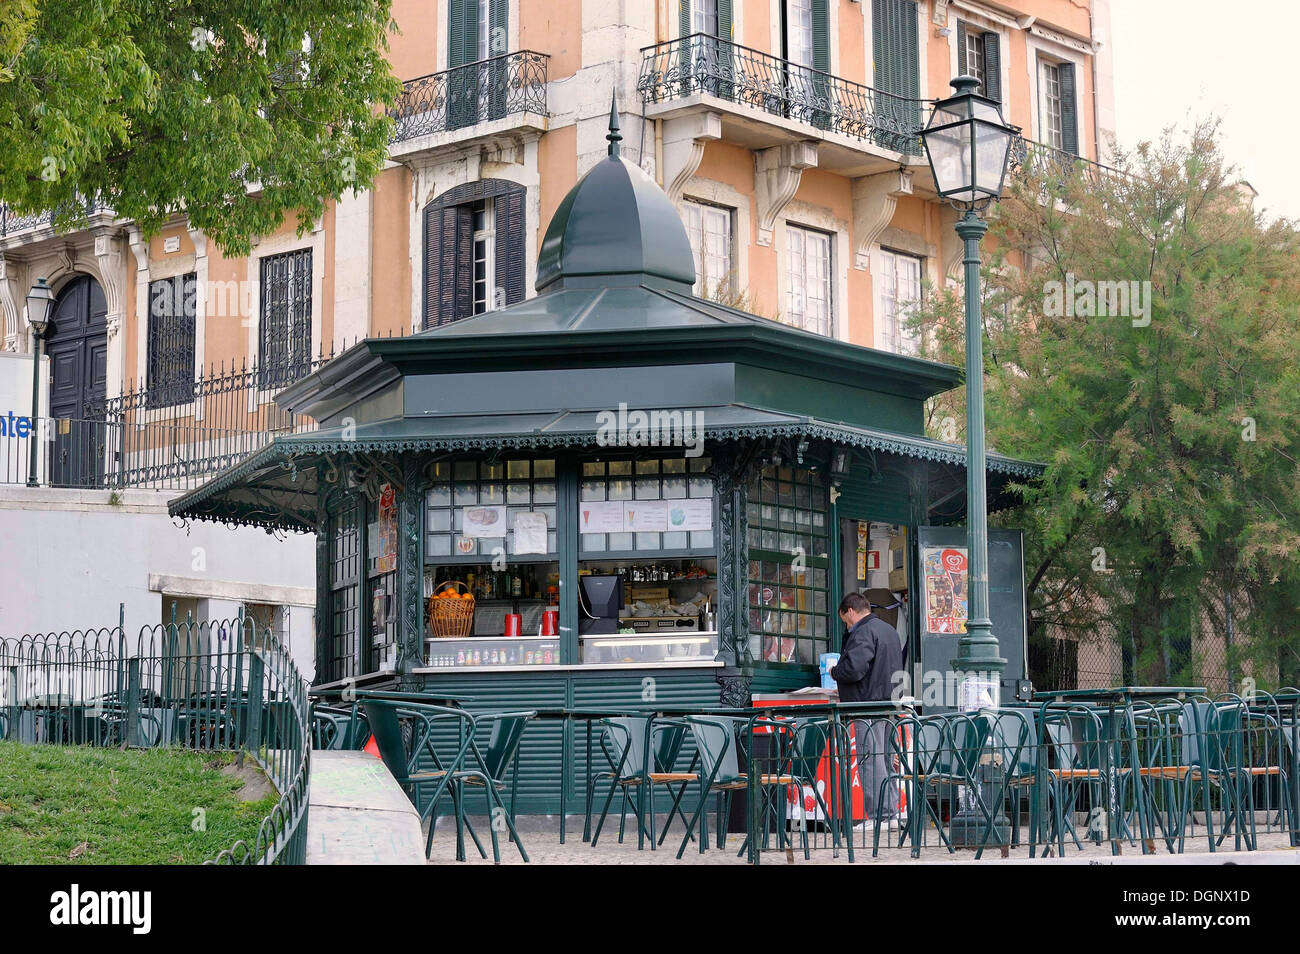 Eine typische Gusseisen polygonalen Kiosk, Stühle und Tische stehen davor, Bairro Alto, Lissabon, Portugal, Europa Stockfoto